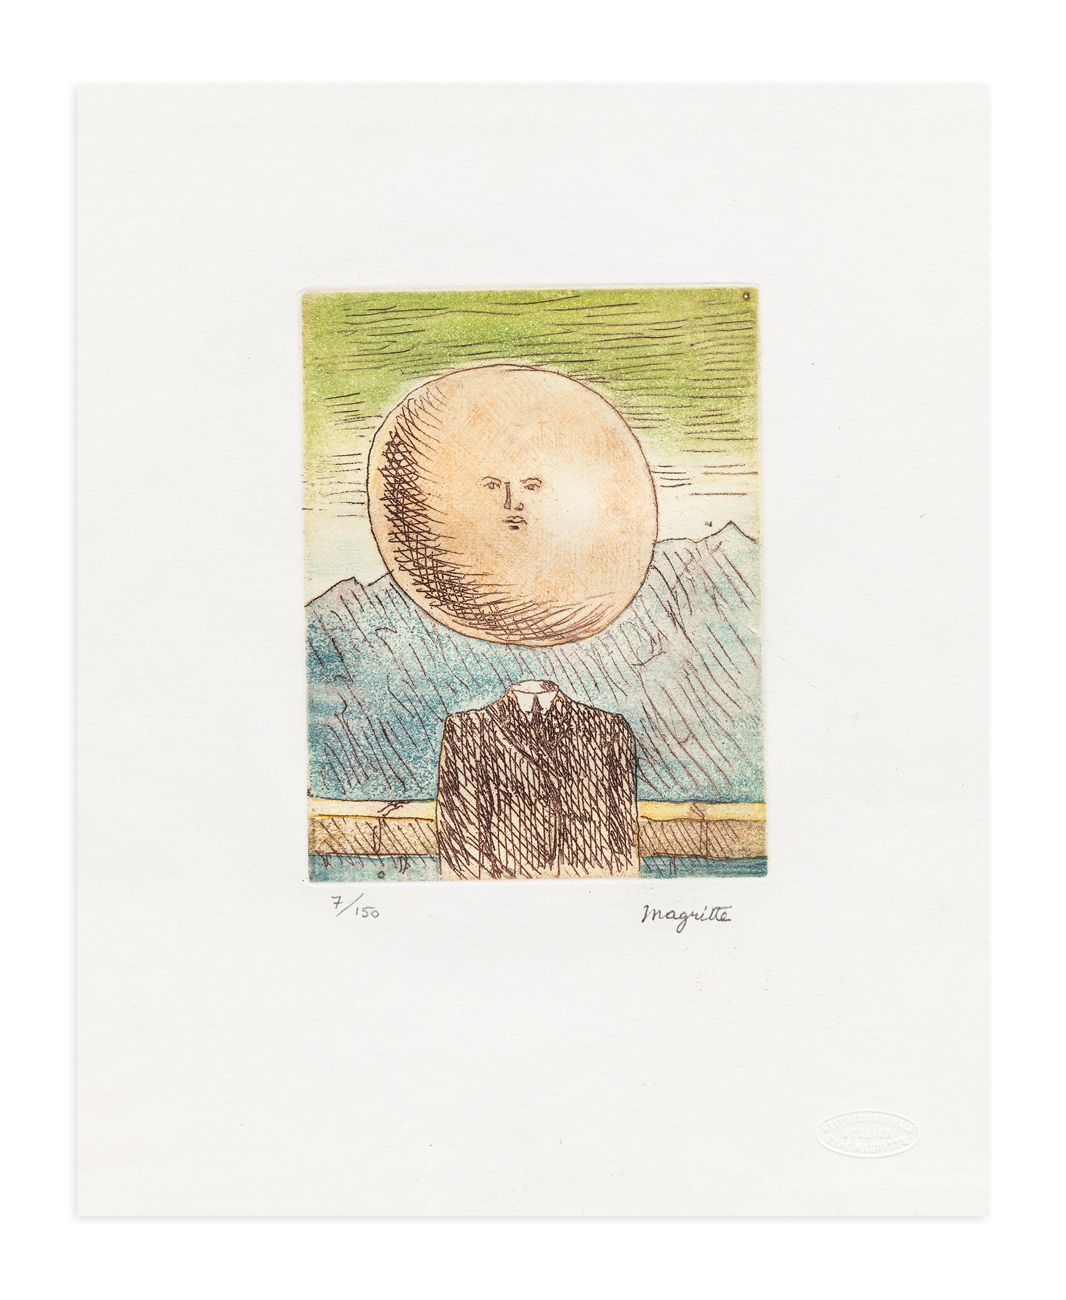 RENÉ MAGRITTE D'APRÉS - L'Art de vivre (Le Lien de Paille), 1969 BFK Rives纸上的蚀刻画&hellip;